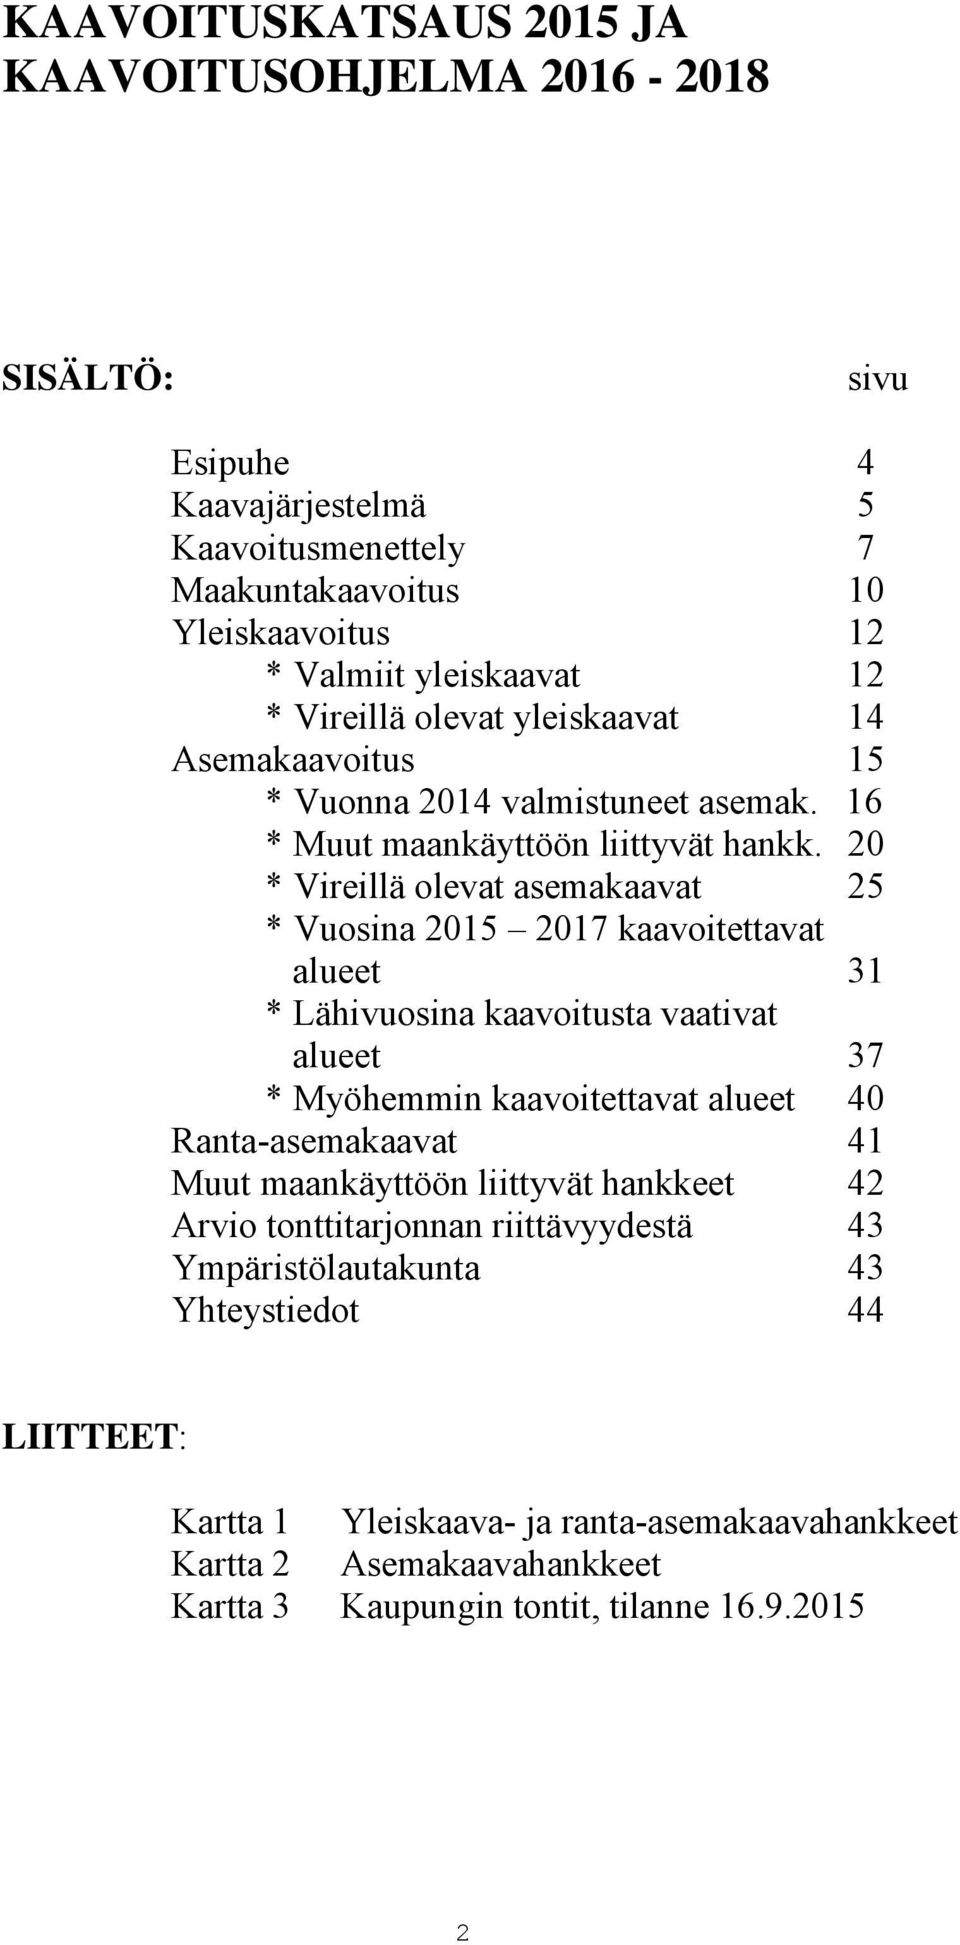 20 * Vireillä olevat asemakaavat 25 * Vuosina 2015 2017 kaavoitettavat alueet 31 * Lähivuosina kaavoitusta vaativat alueet 37 * Myöhemmin kaavoitettavat alueet 40 Ranta-asemakaavat 41